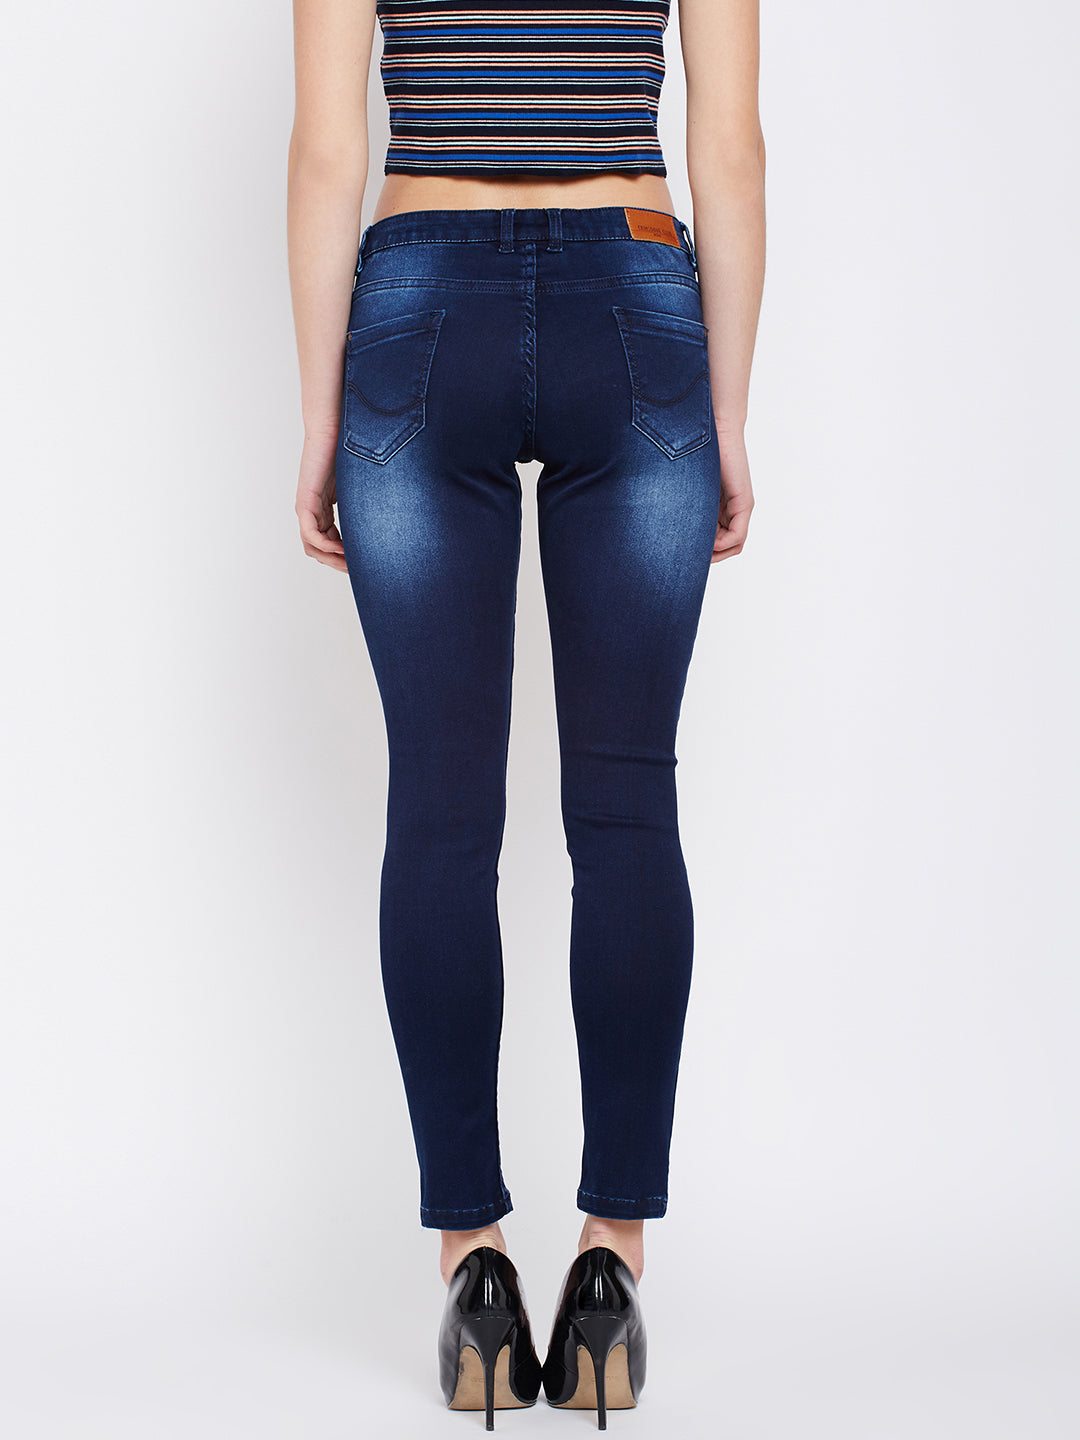 Stonewash Denim - Women Jeans